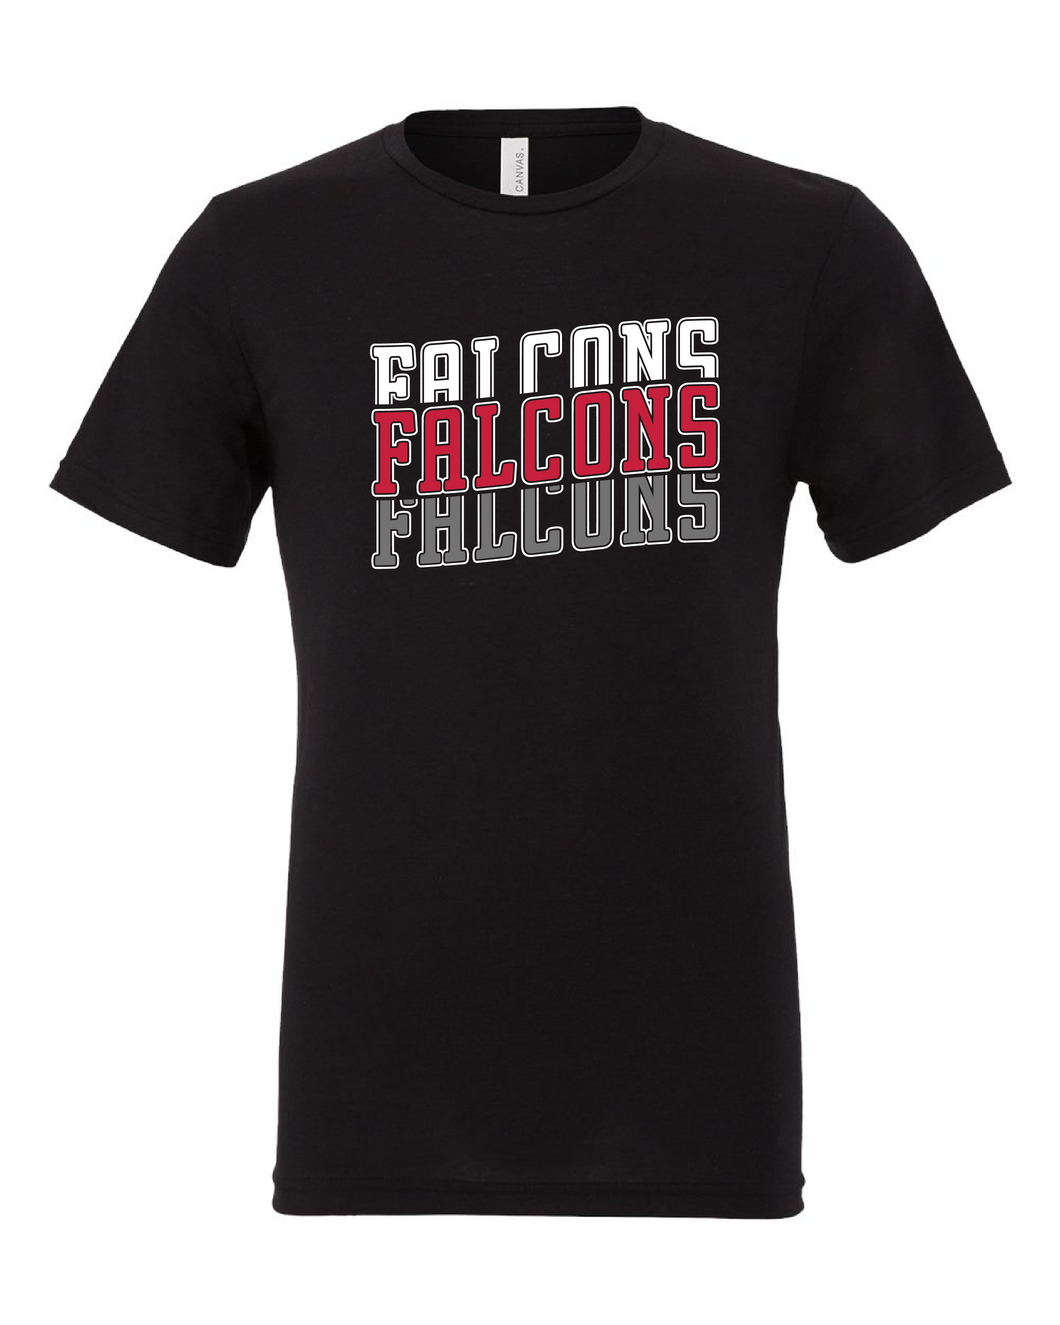 Lincoln Falcons Stacked Tshirt BC